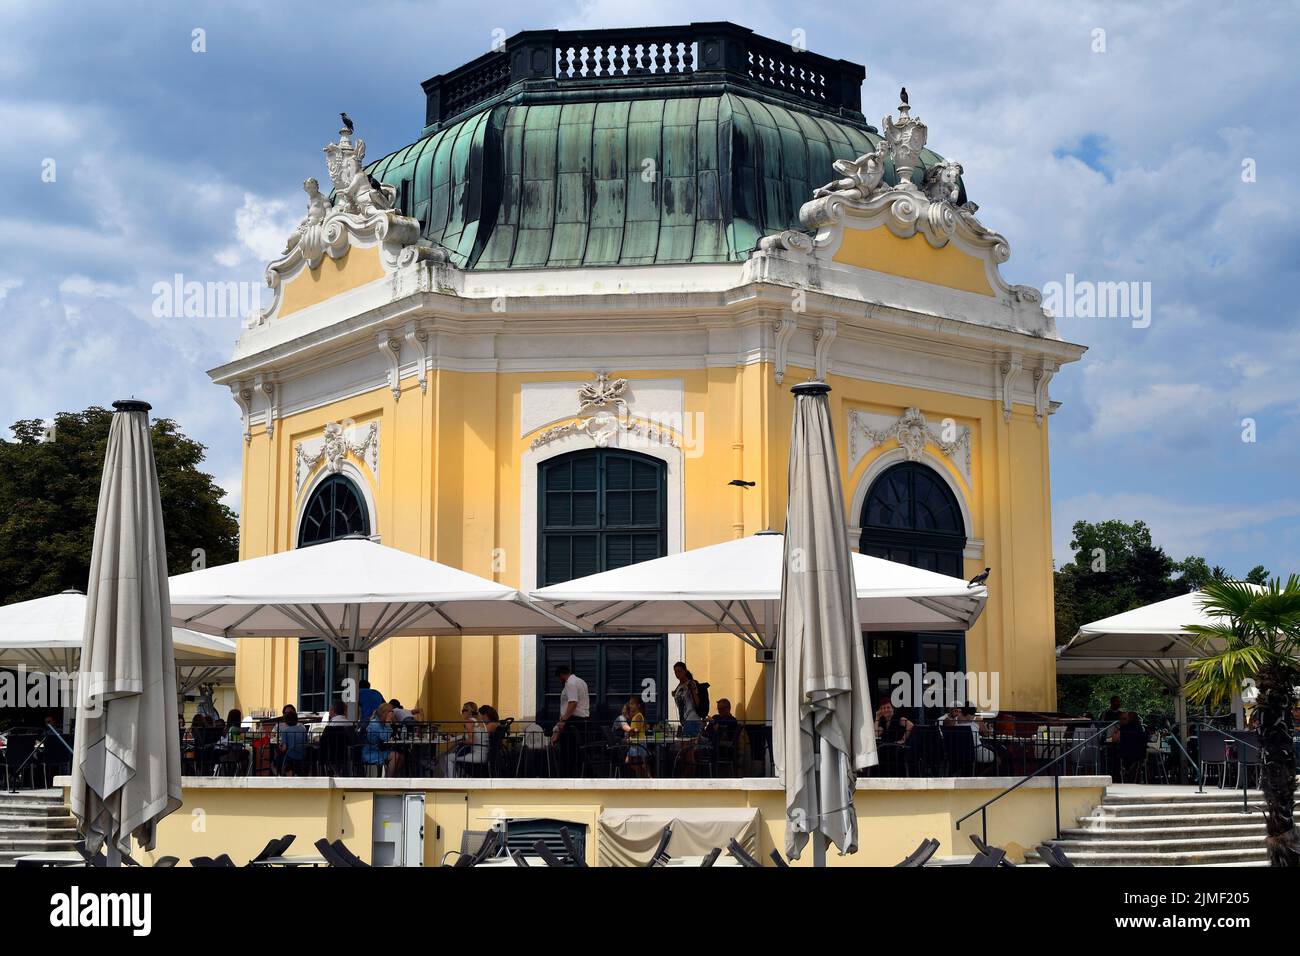 Vienne, Autriche - 01 août 2022: Touristes non identifiés et le soi-disant pavillon impérial dans le zoo, maintenant utilisé comme un café-restaurant - ancien été Banque D'Images